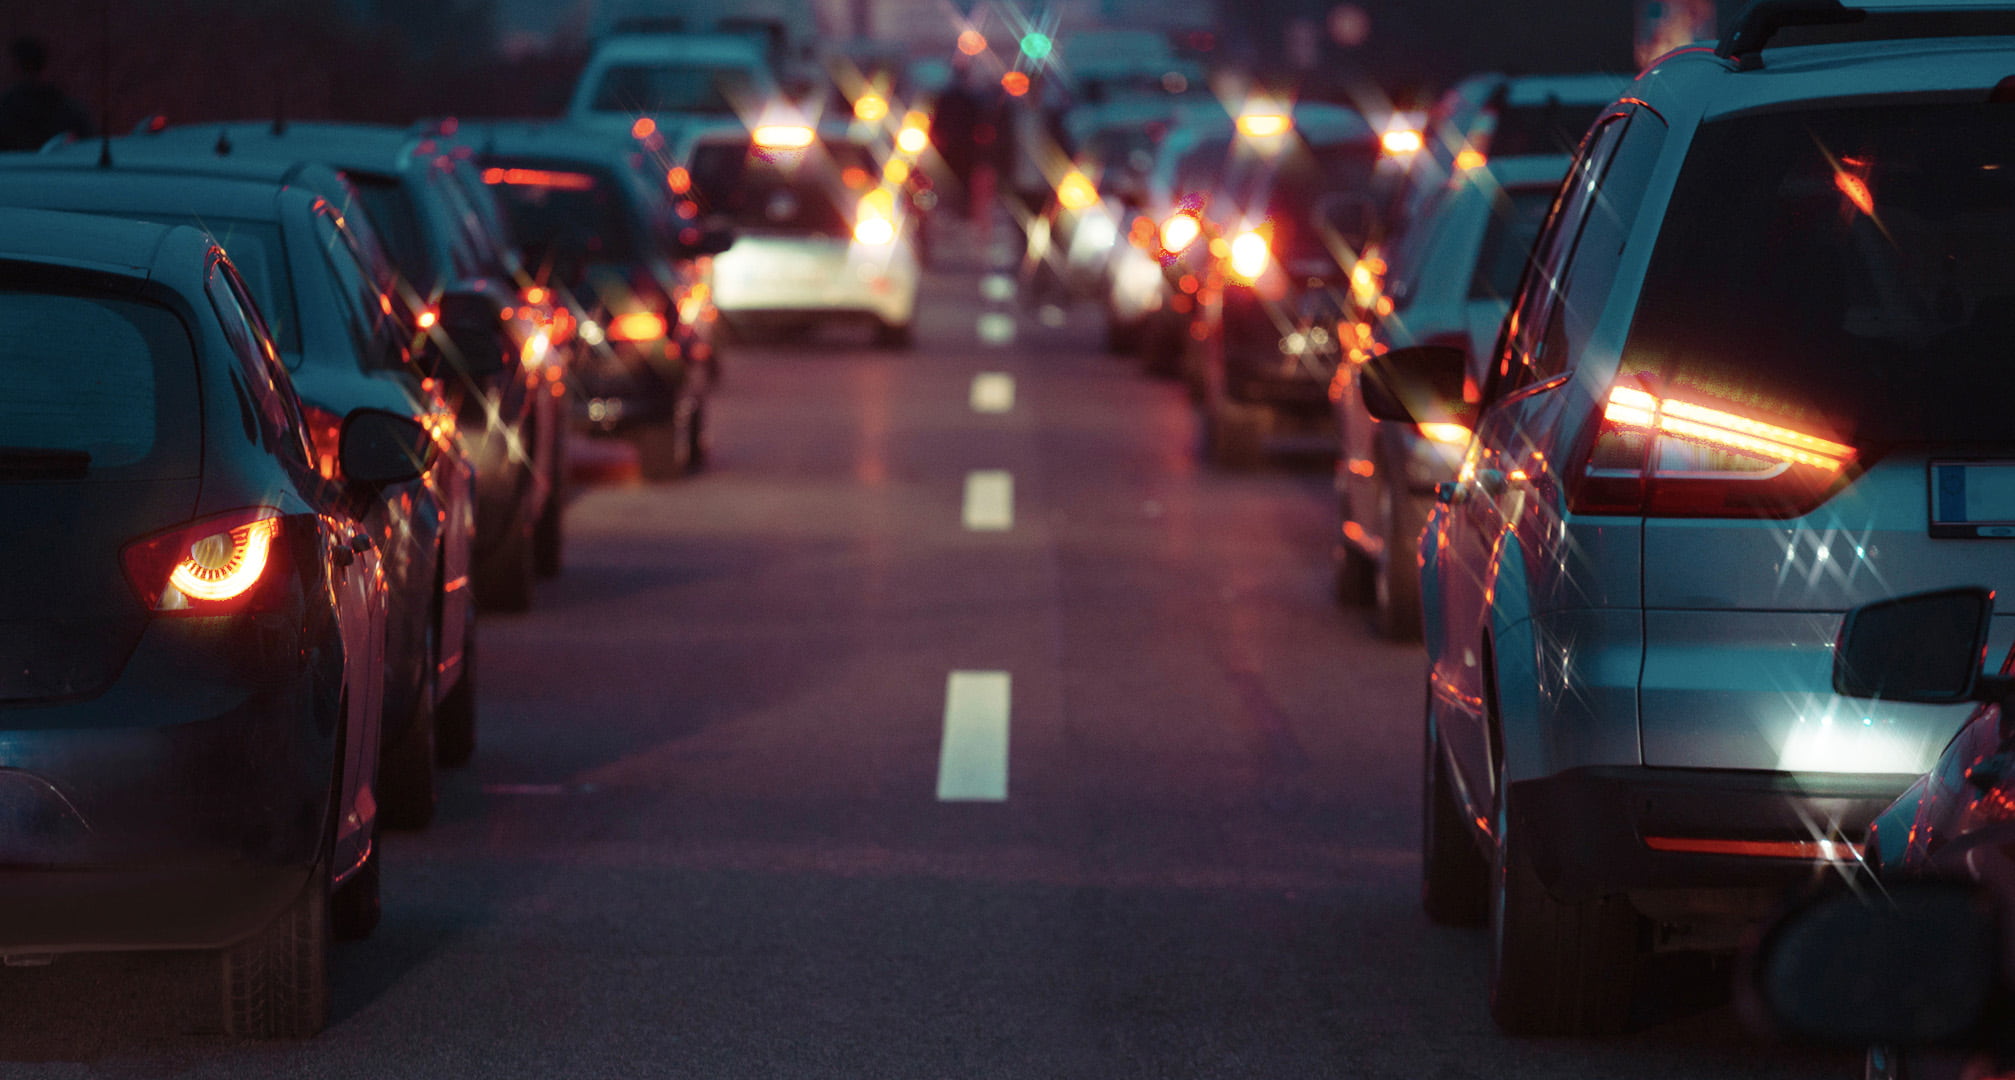 Ακτίνες φωτός που διατρέχουν το κέντρο των πίσω φώτων αυτοκινήτου που απεικονίζουν αστιγματισμό τη νύχτα (αριστερά). Καθαρά πίσω φώτα του αυτοκινήτου τη νύχτα που φαίνονται με κανονικό μάτι (δεξιά)